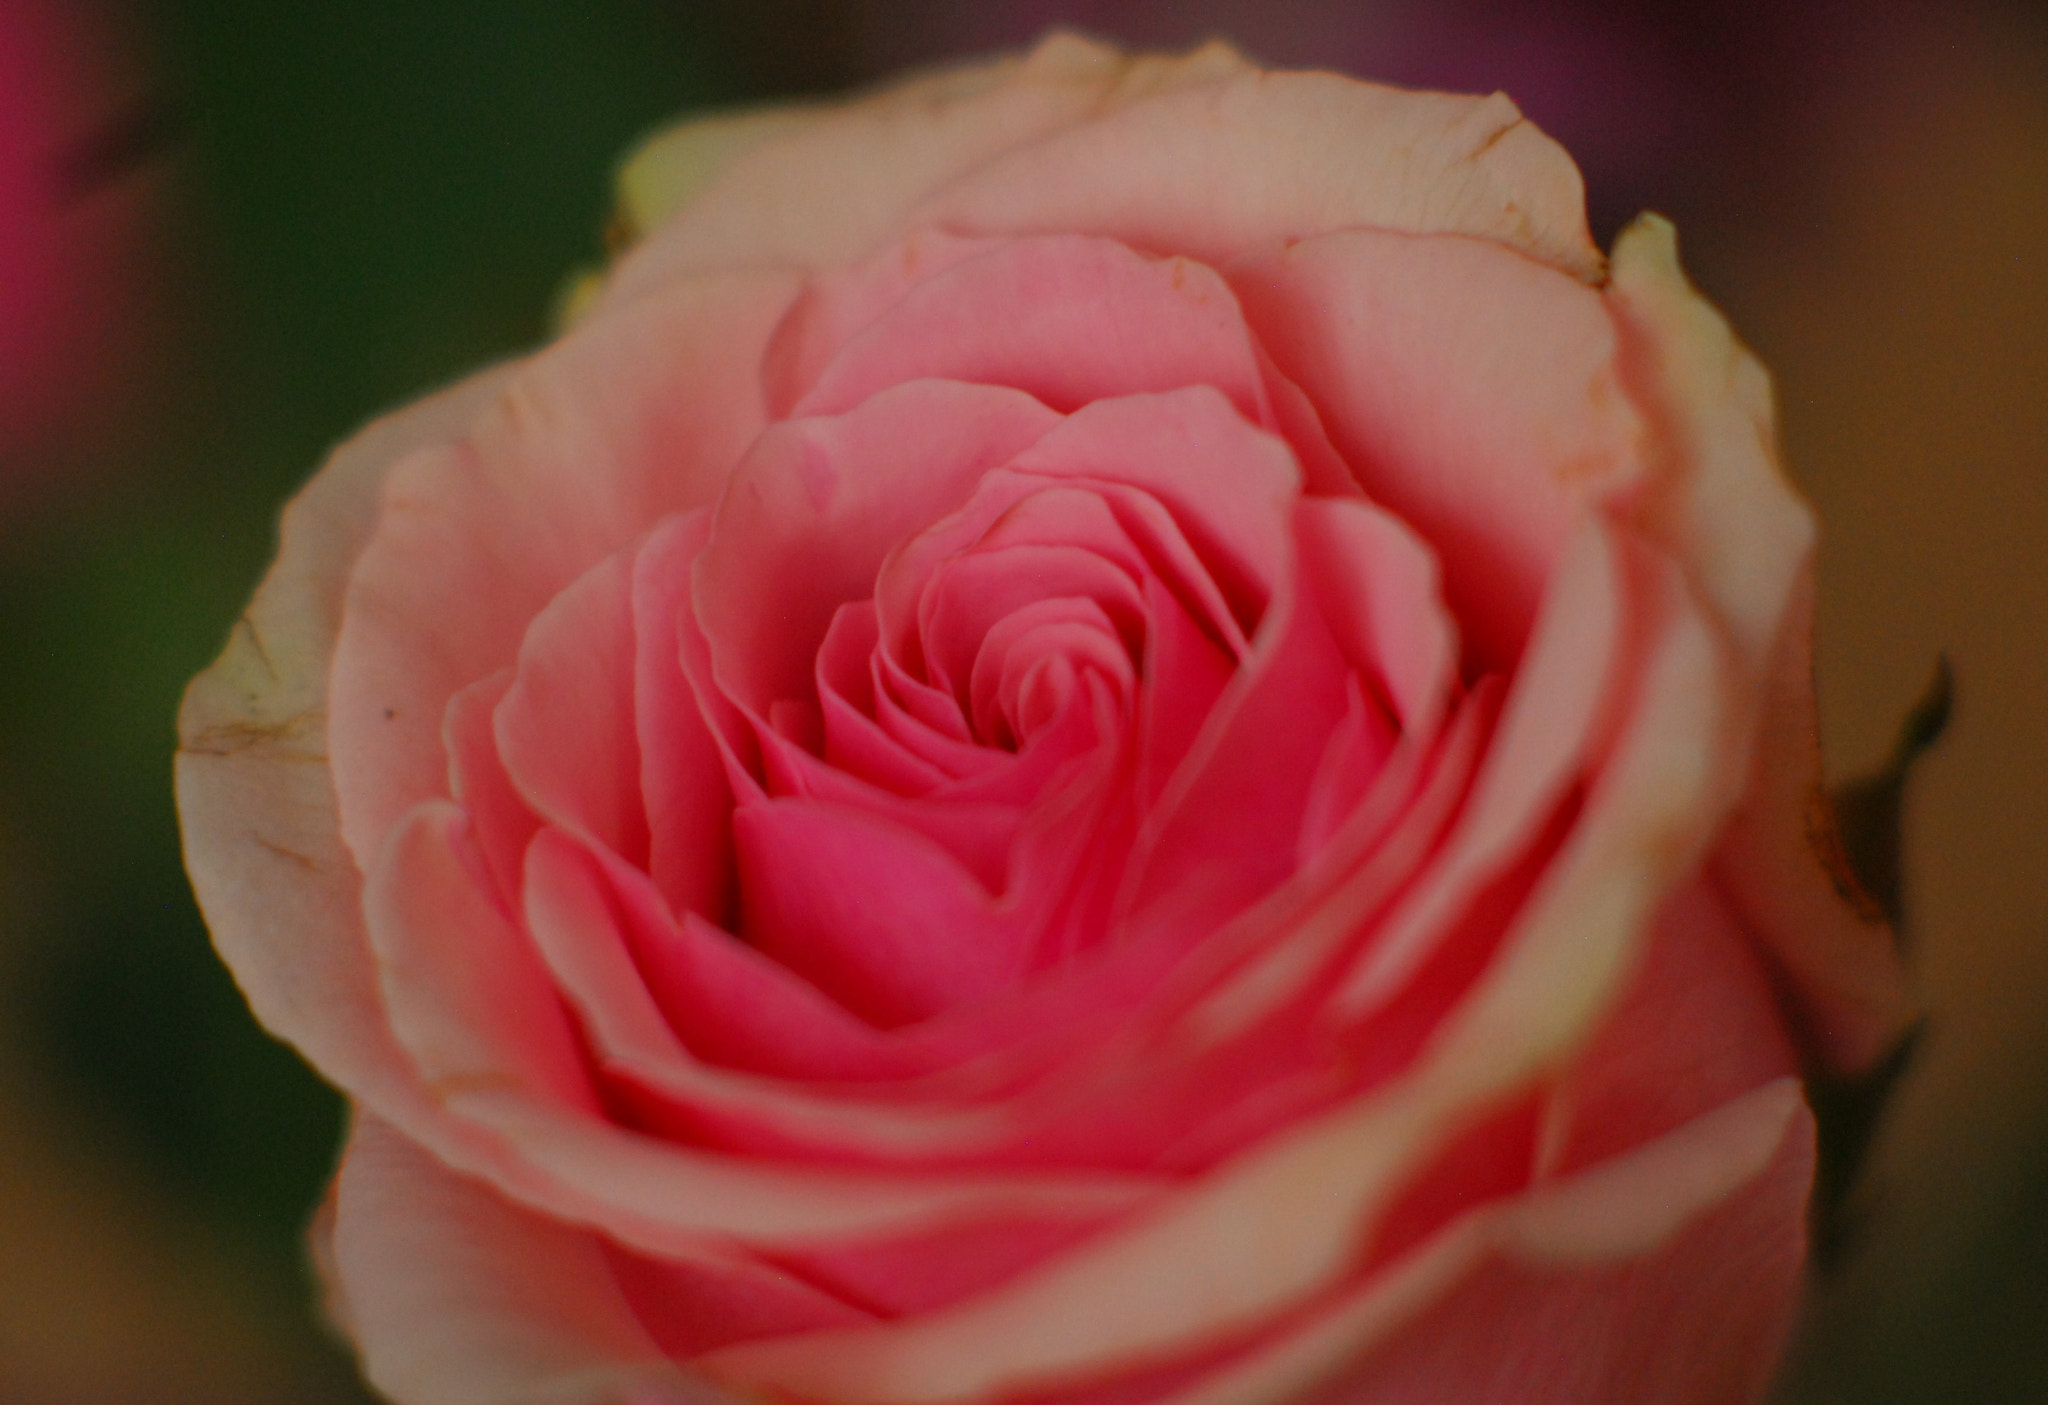 Nikon D200 sample photo. Pink rose photography